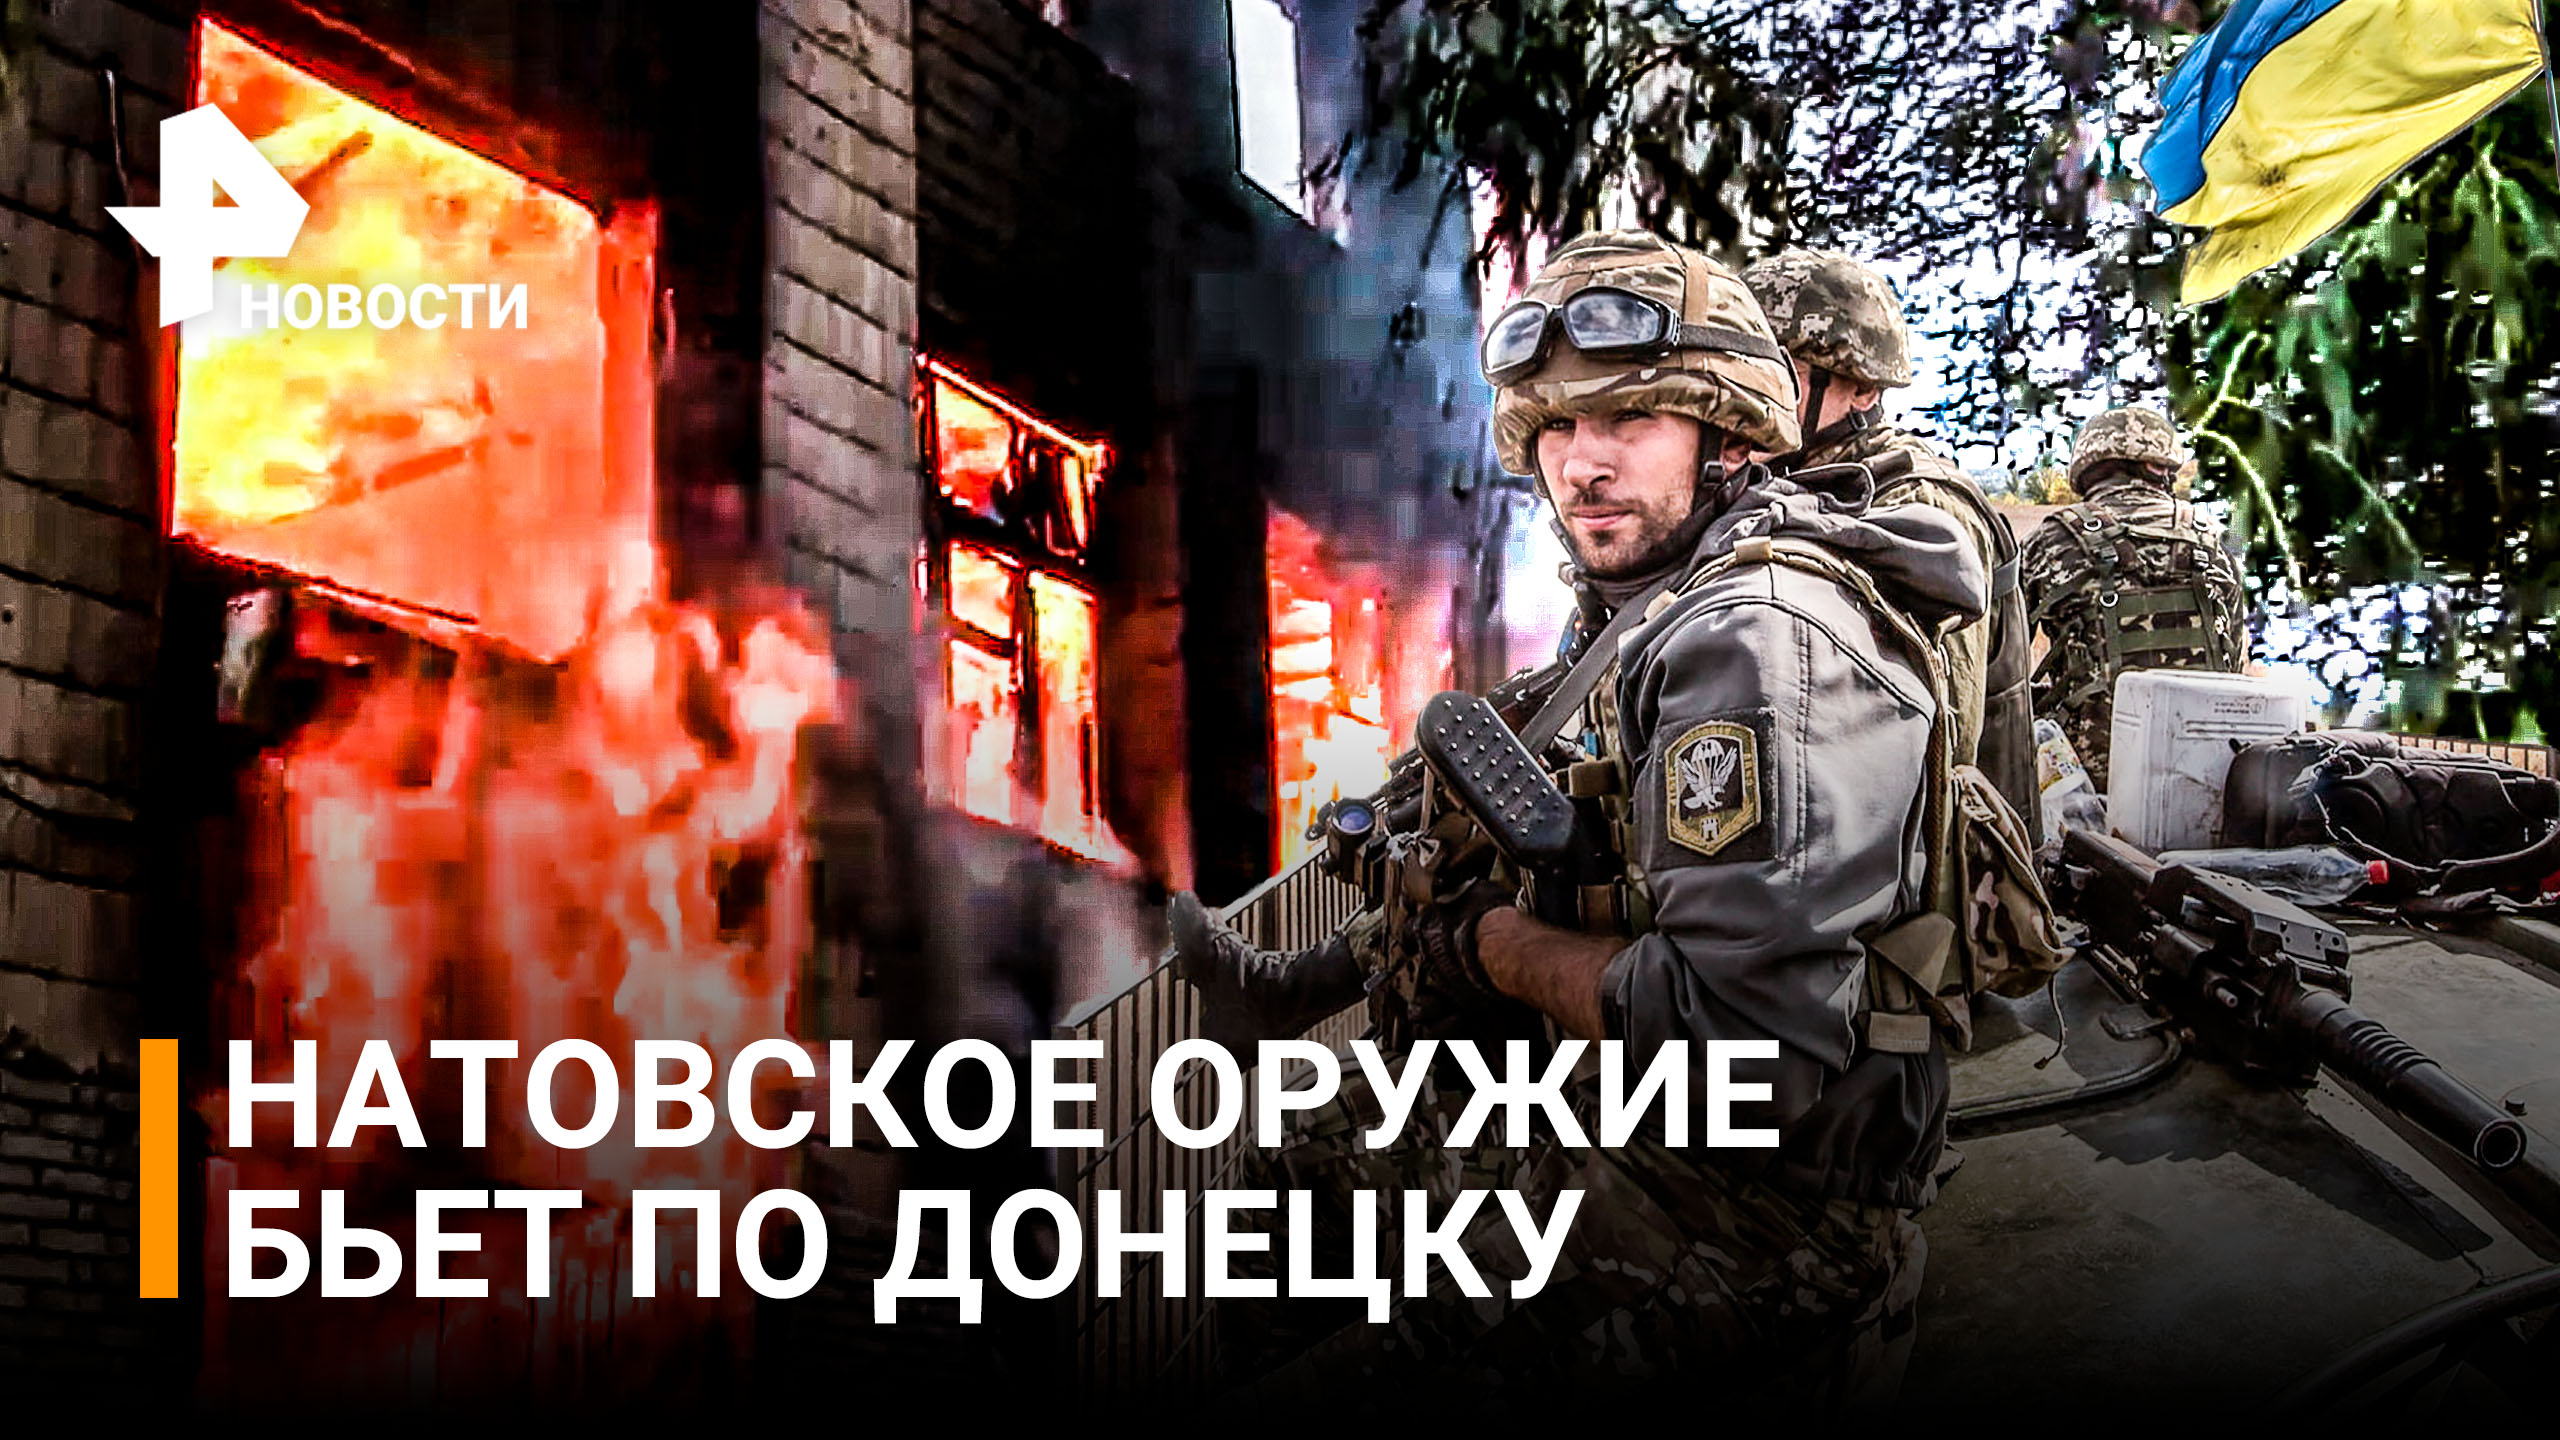 Украинские военные за час выпустили по Донецку 50 снарядов. Погибли волонтеры / РЕН Новости